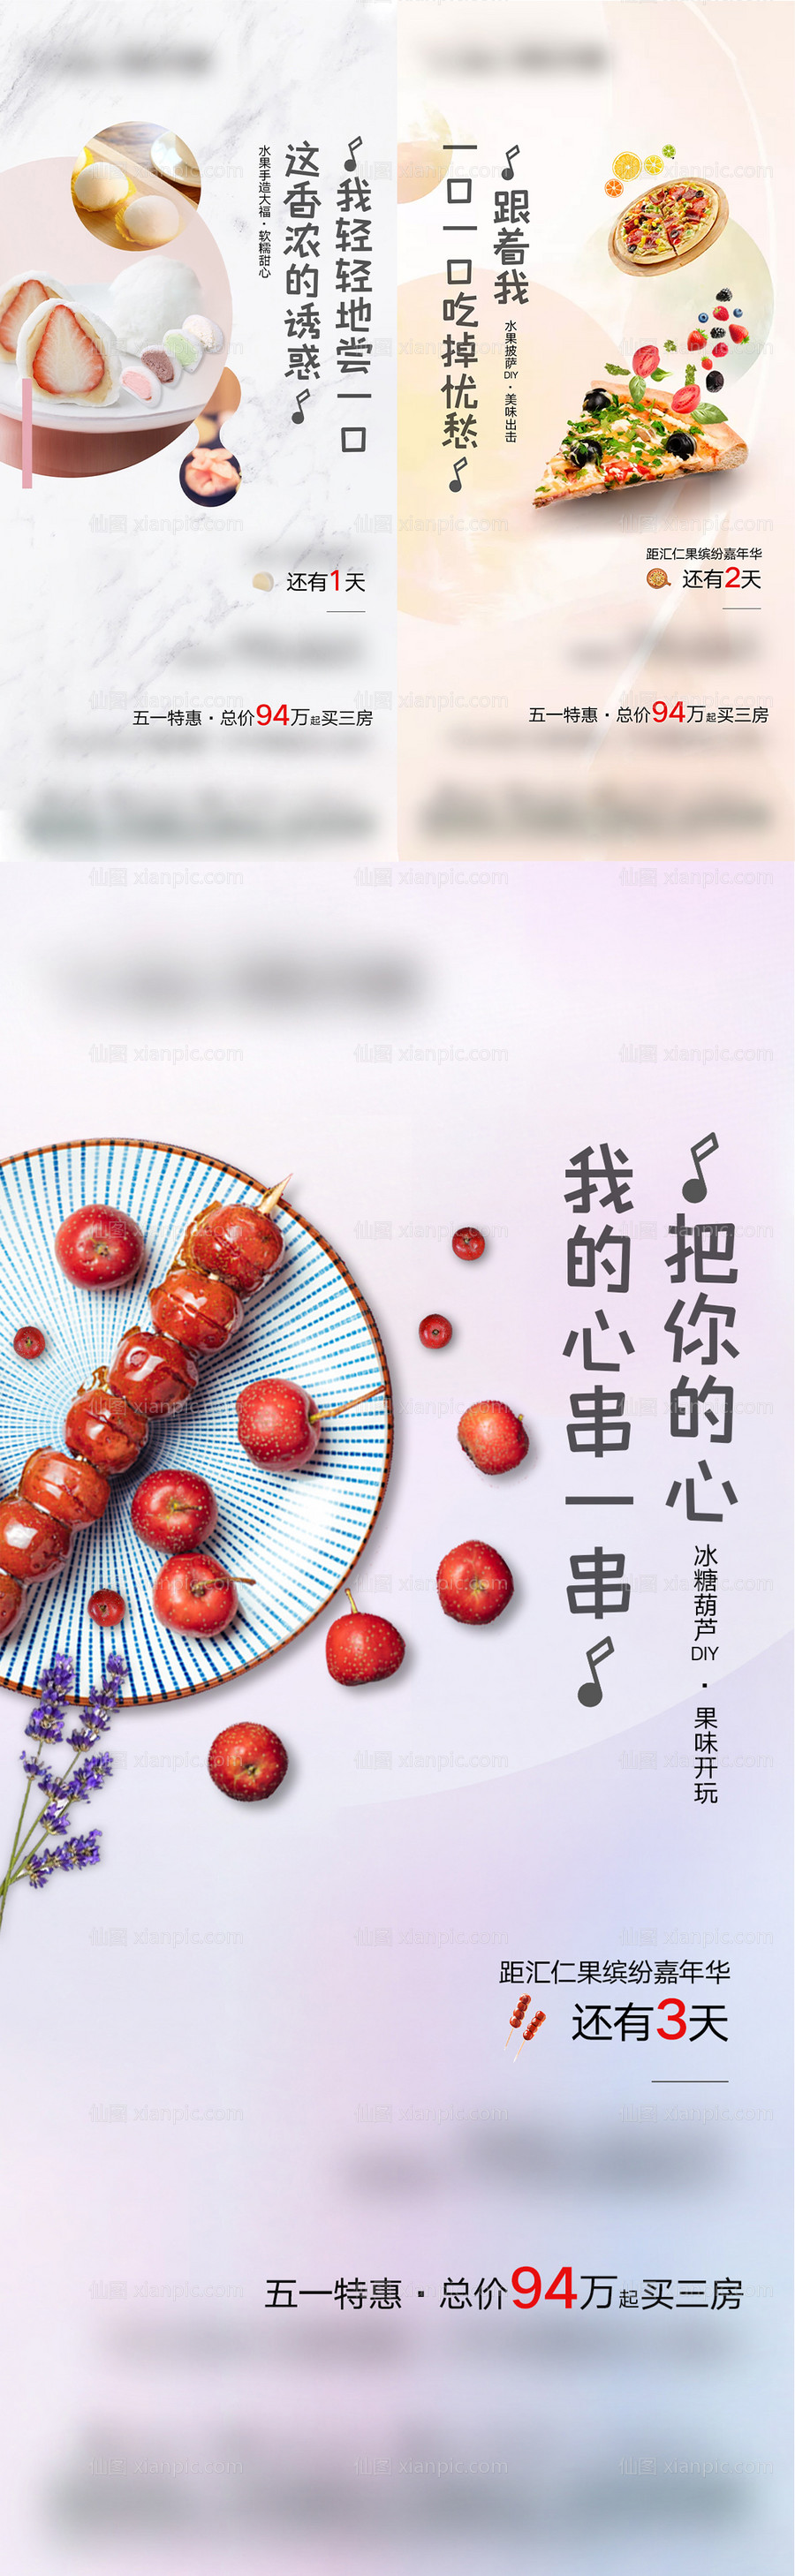 素材乐-地产水果节活动倒计时系列海报